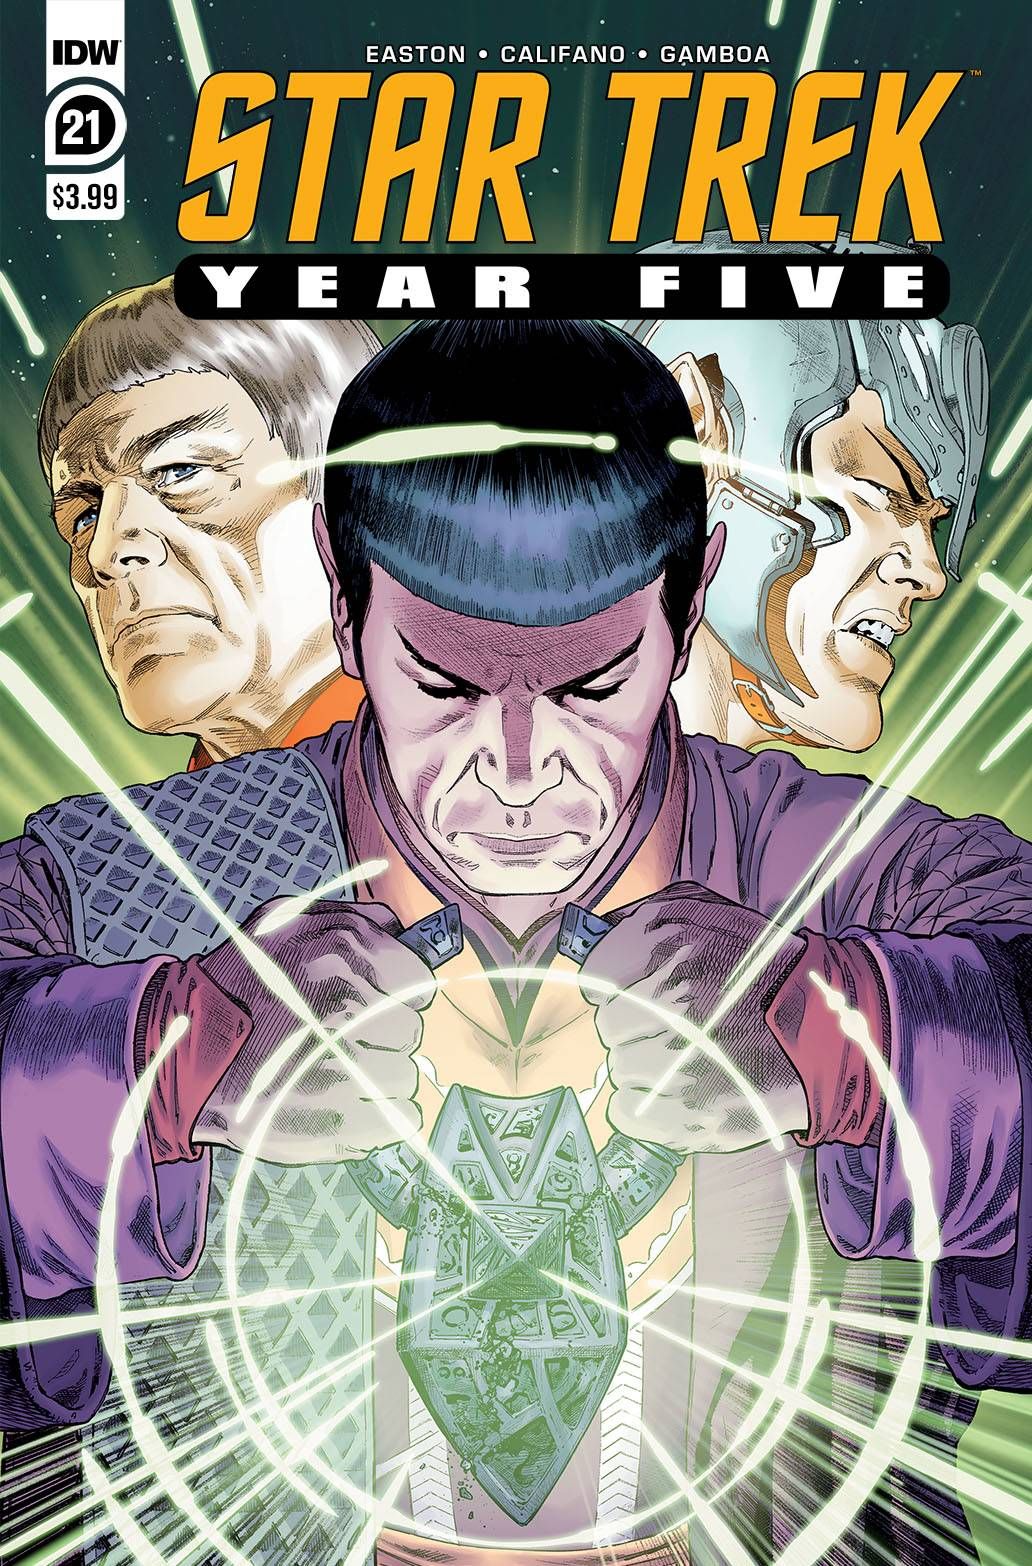 Star Trek Year Five #21 Comic